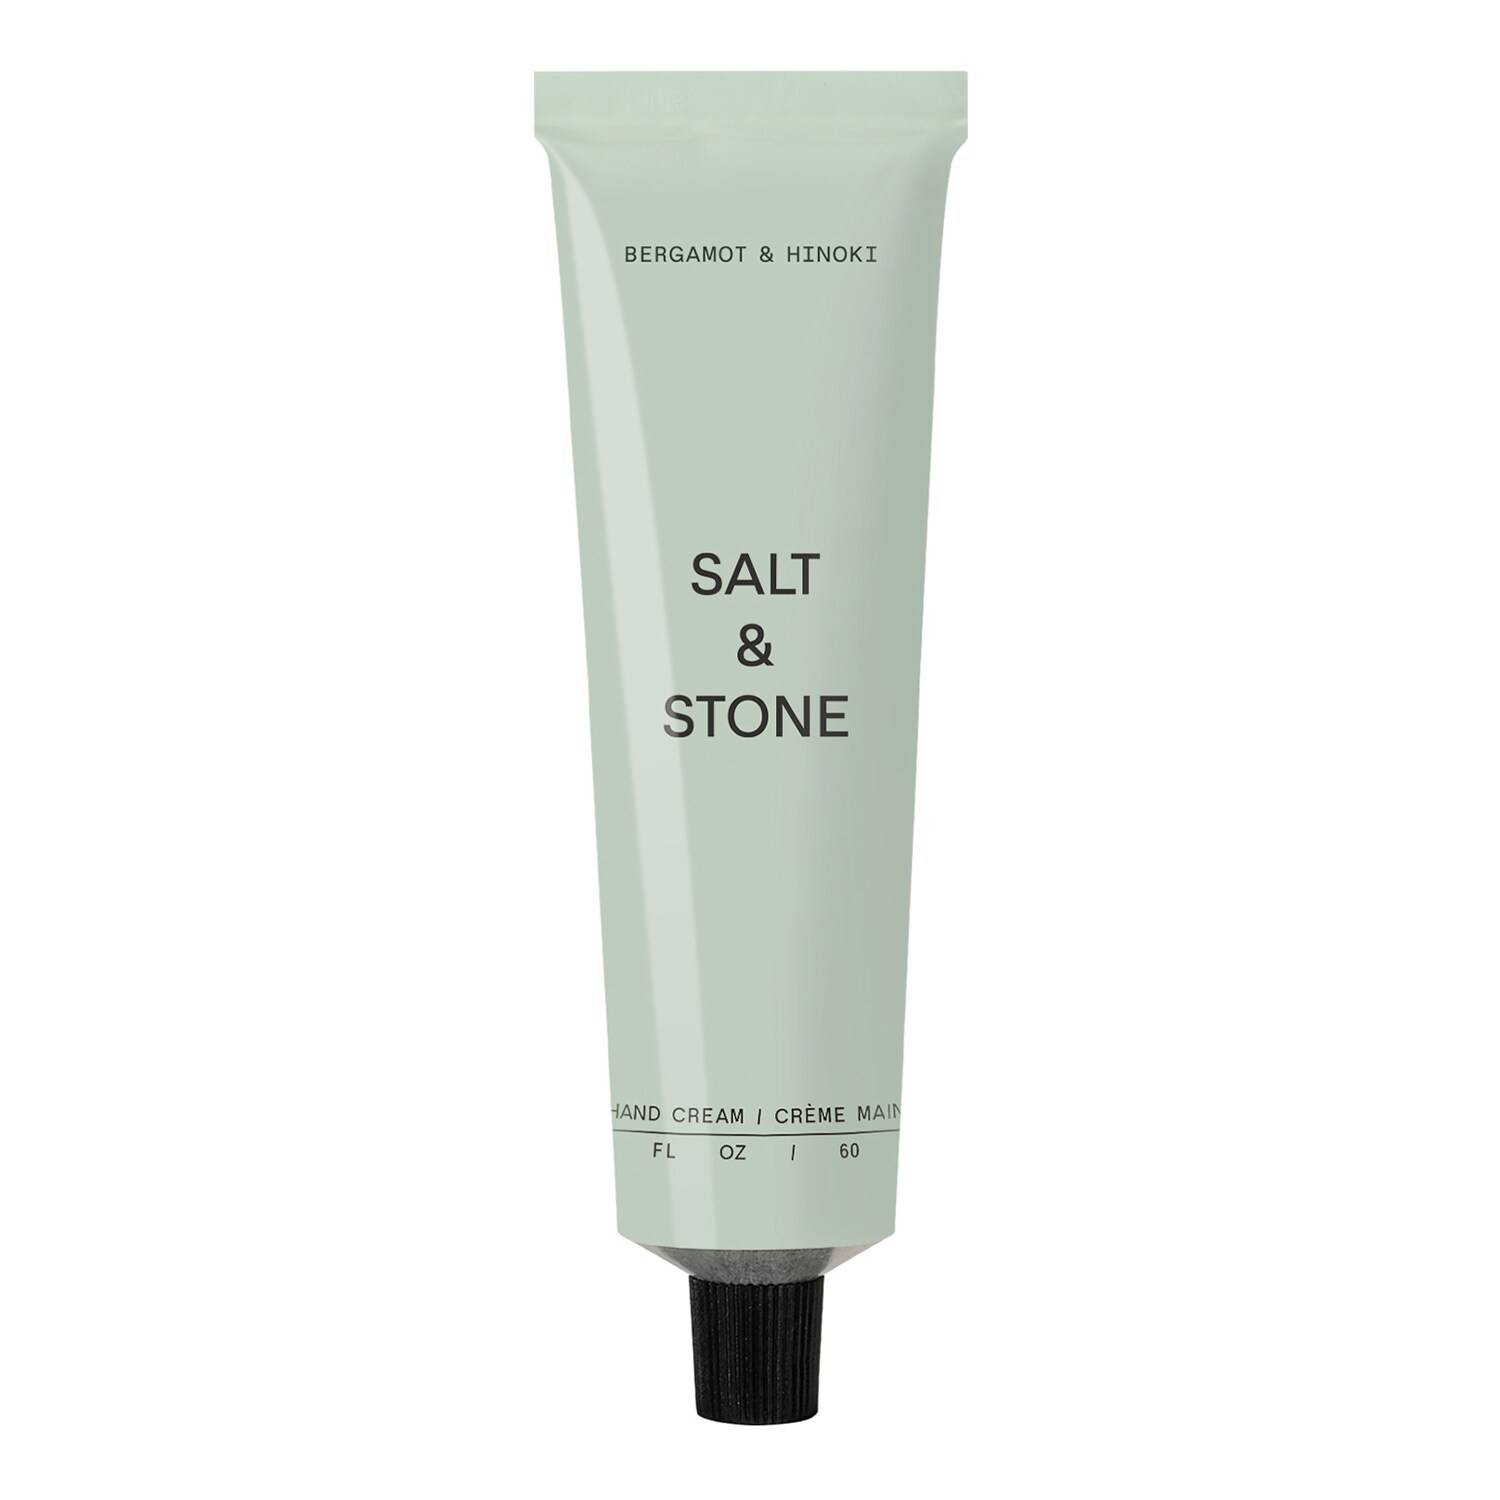 Salt And Stone Bergamot & Hinoki Hand Cream 60Ml